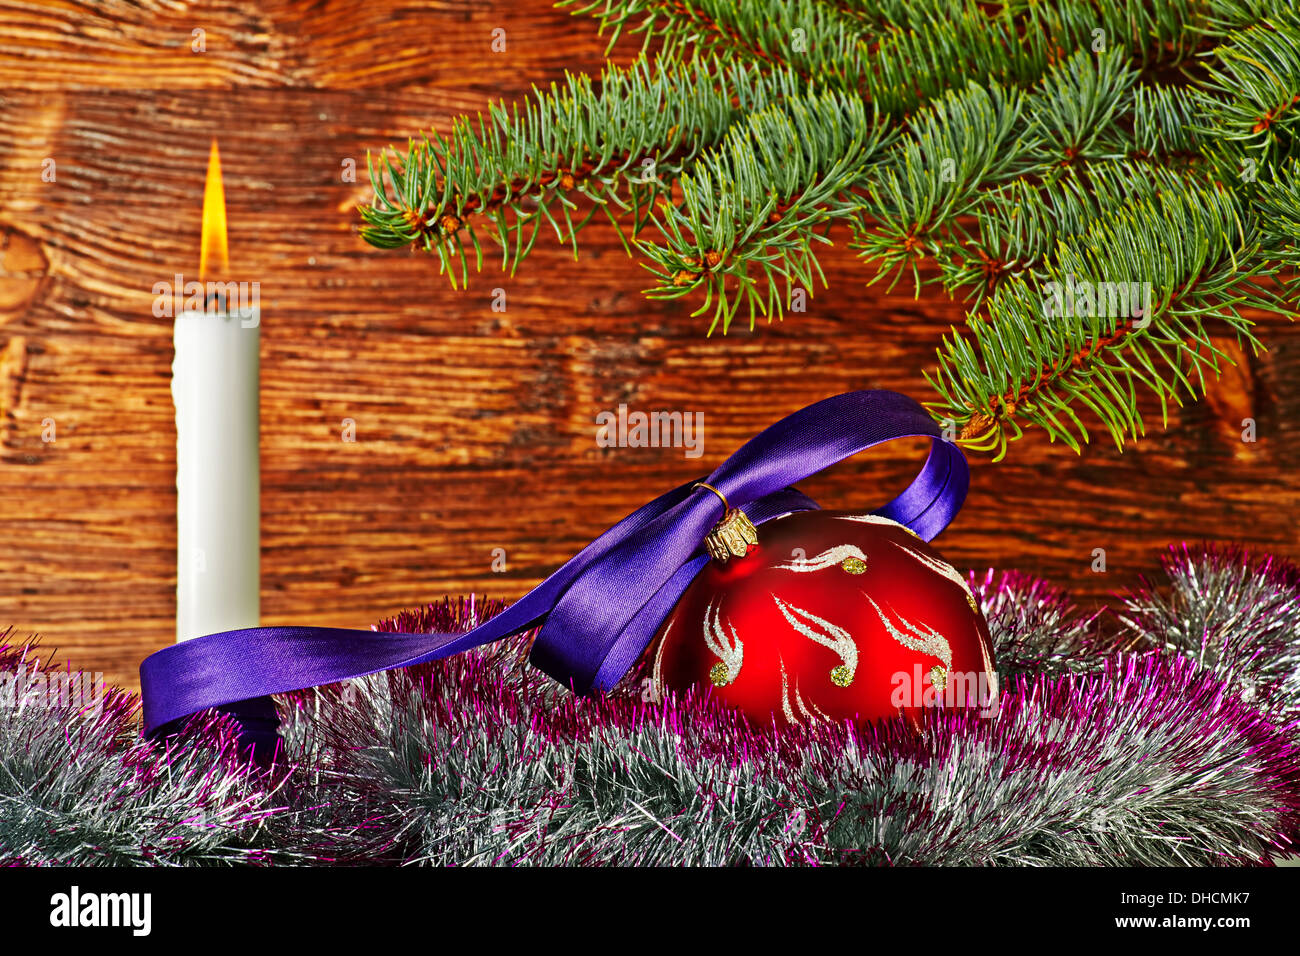 Décoration de Noël. Balle rouge violet, ruban, sapin, bougie et fond de bois. Selective focus Banque D'Images